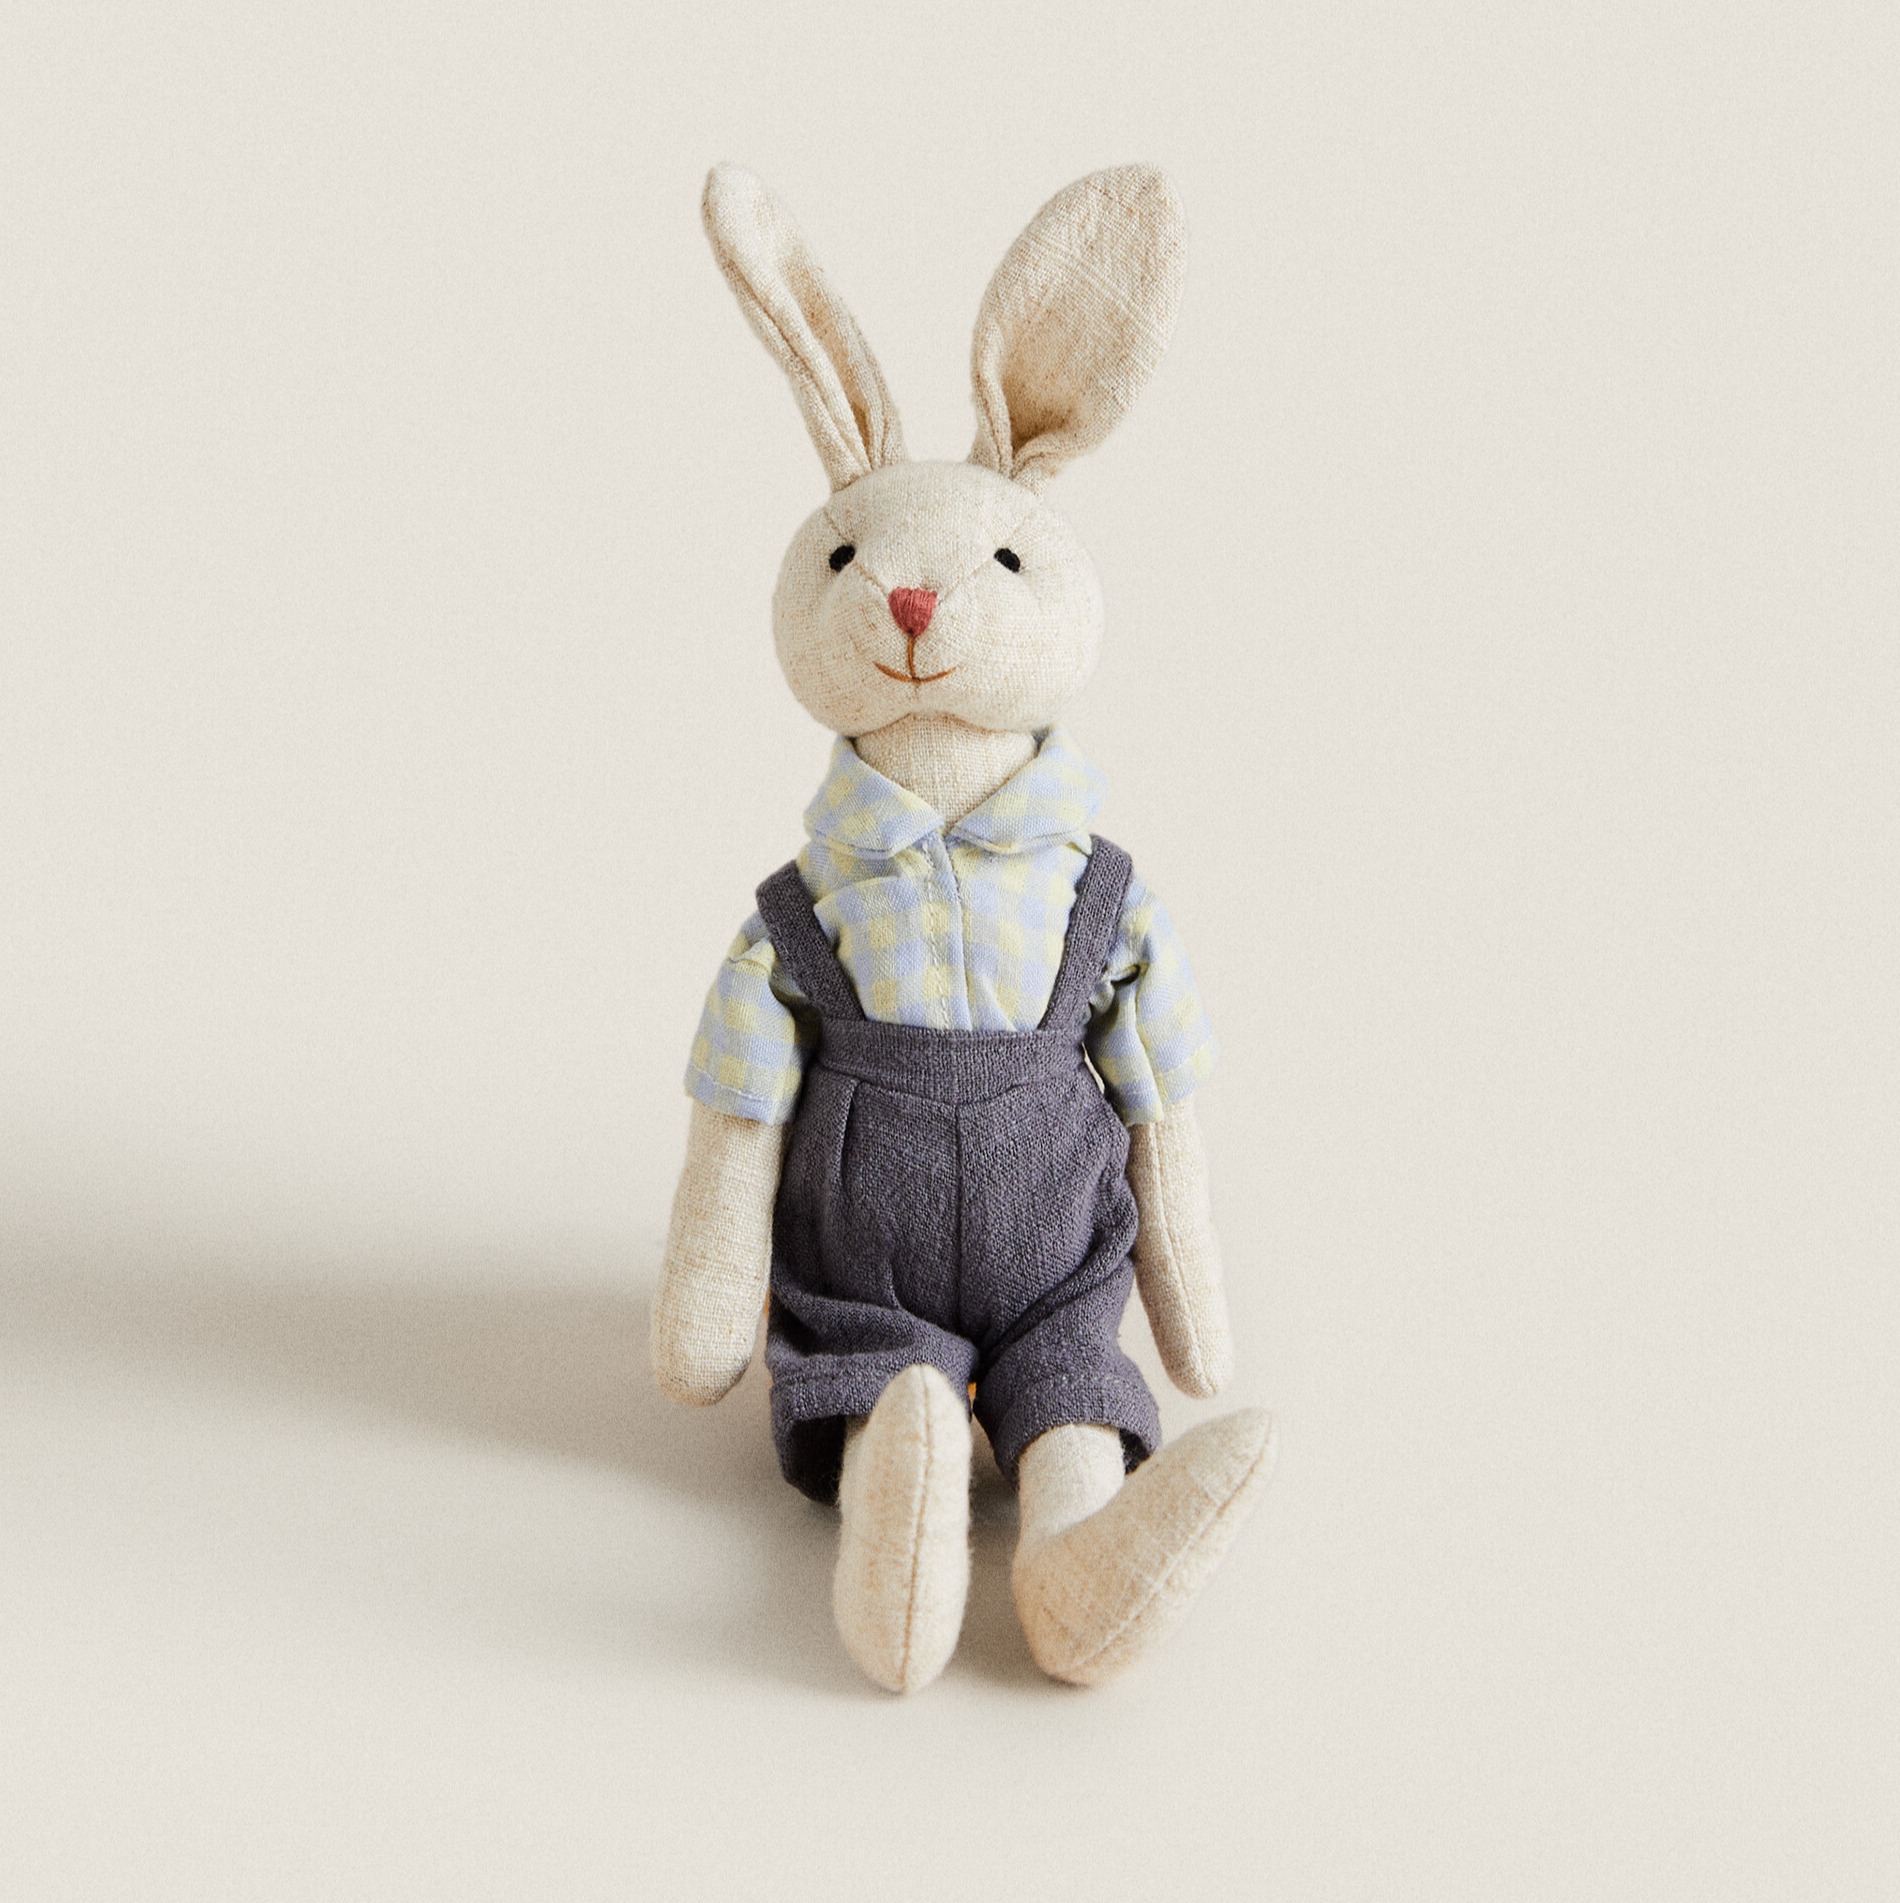 Мягкая игрушка Zara Home Rabbit, мультиколор тигр глеб в штанах и клетчатой рубашке 20 см mt mrt022106 20